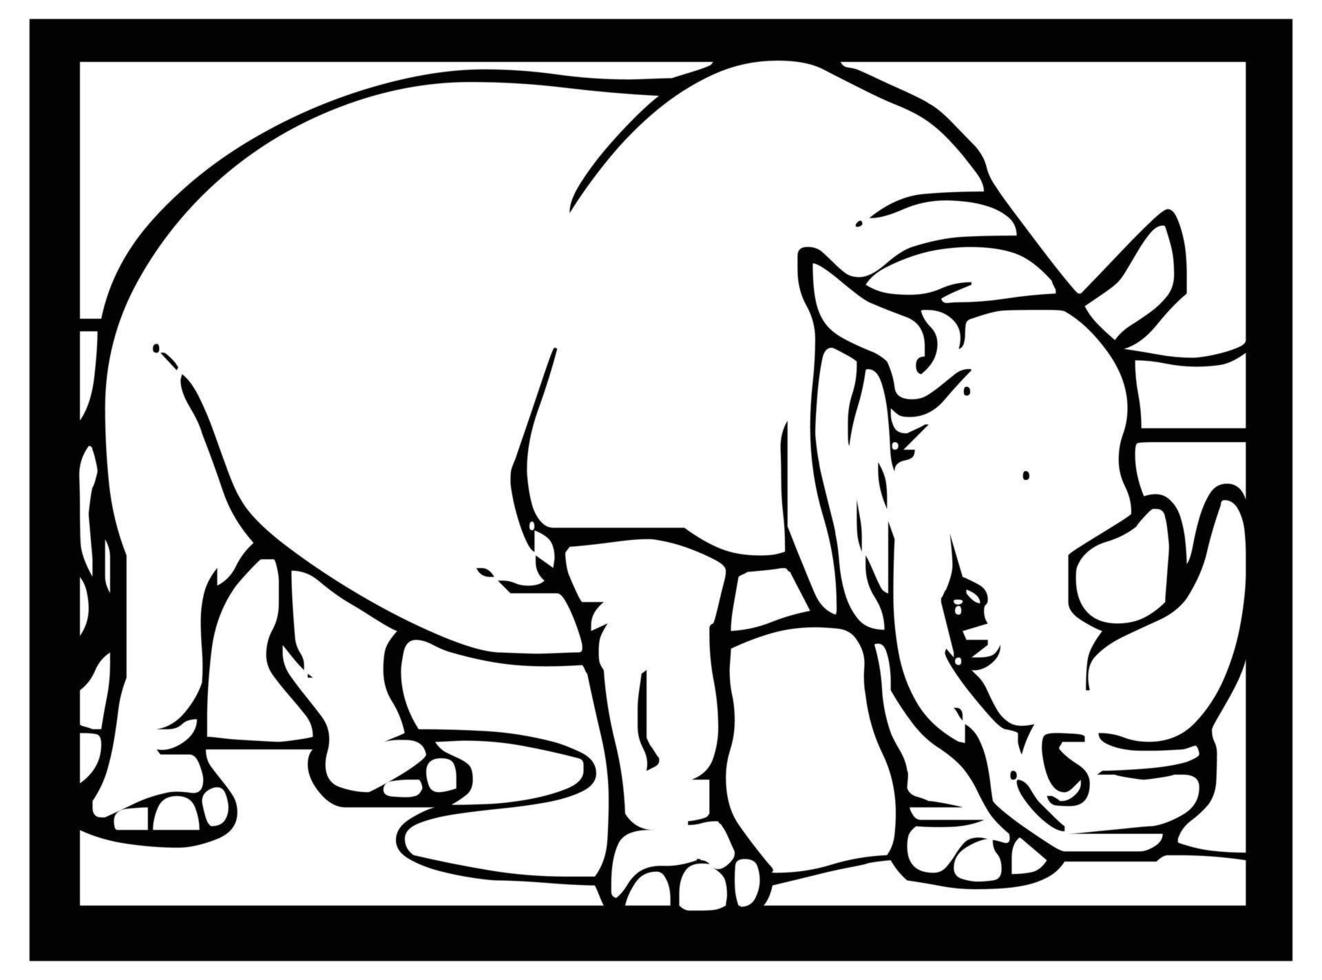 croquis de rhinocéros sur fond noir et blanc dans un cadre pour la bande dessinée ou apprendre à colorier pour les enfants. vecteur